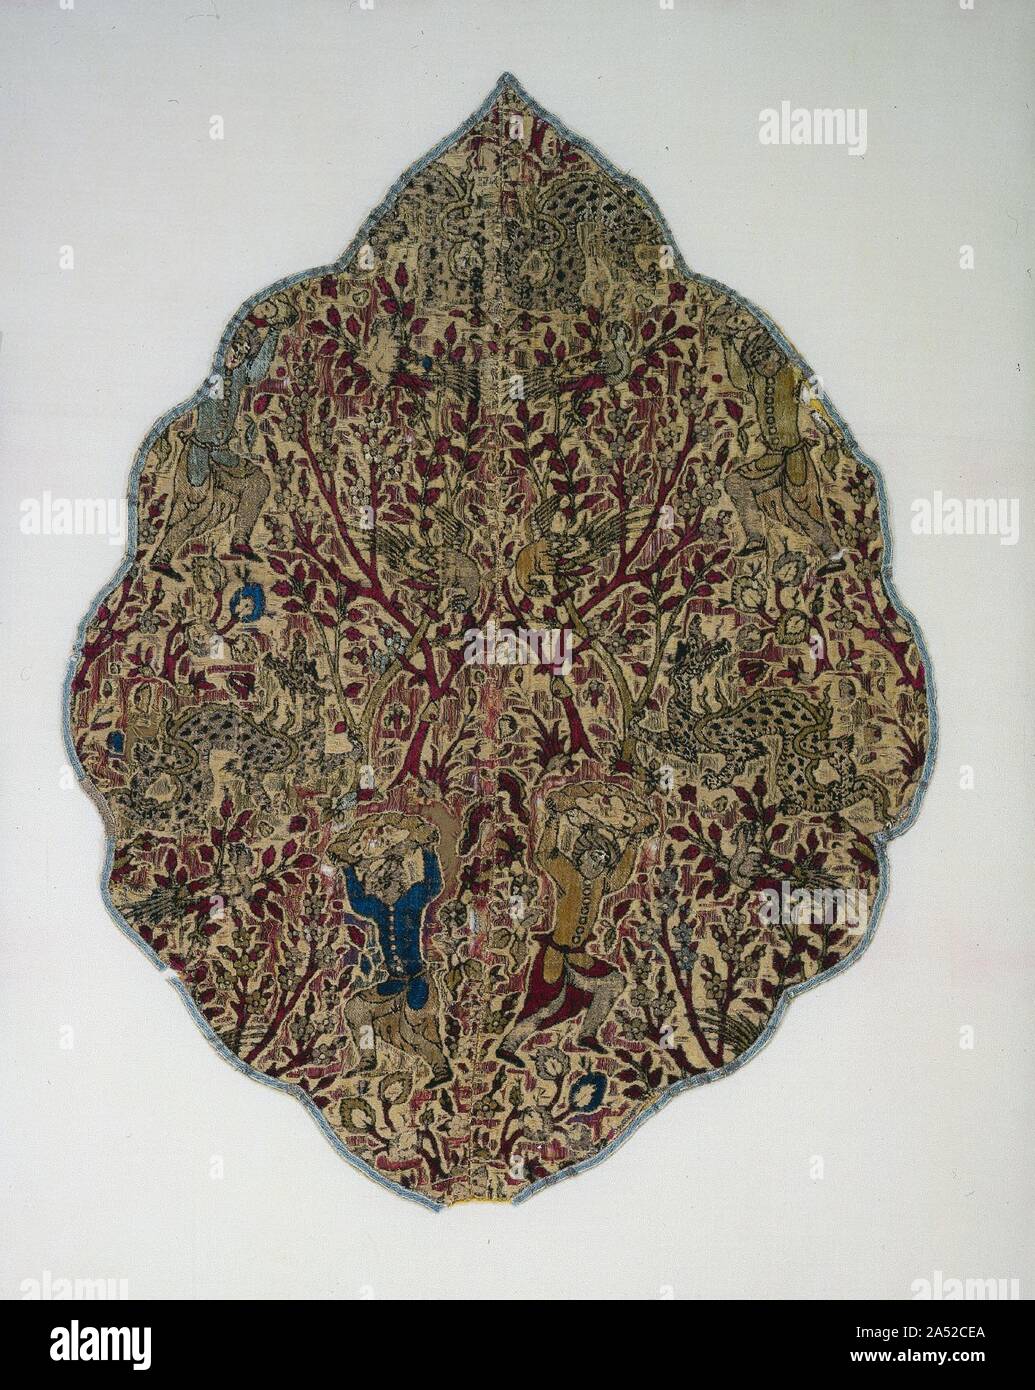 Tente avant d'un dragon slayer, 1550-1599. Ce médaillon velours décoré l'intérieur d'une tente impériale, peut-être donné par Shah Tahmasp à un sultan turc ottoman. Capturé après le siège ottoman de Vienne en 1683, le médaillon a été avancé comme butin de guerre par le commandant en chef Prince Sanguszko de Pologne par dont le nom cela et d'autres panneaux sont connus. Ici, un dragon slayer habillé en 16ème siècle tenue de la cour s'apprête à lancer un rocher à ses crocs d'un dragon dans un paysage avec des arbres fruitiers en fleurs et oiseaux perchés. A l'origine, la terre était couverte d'ivoire doré coûteux-met Banque D'Images